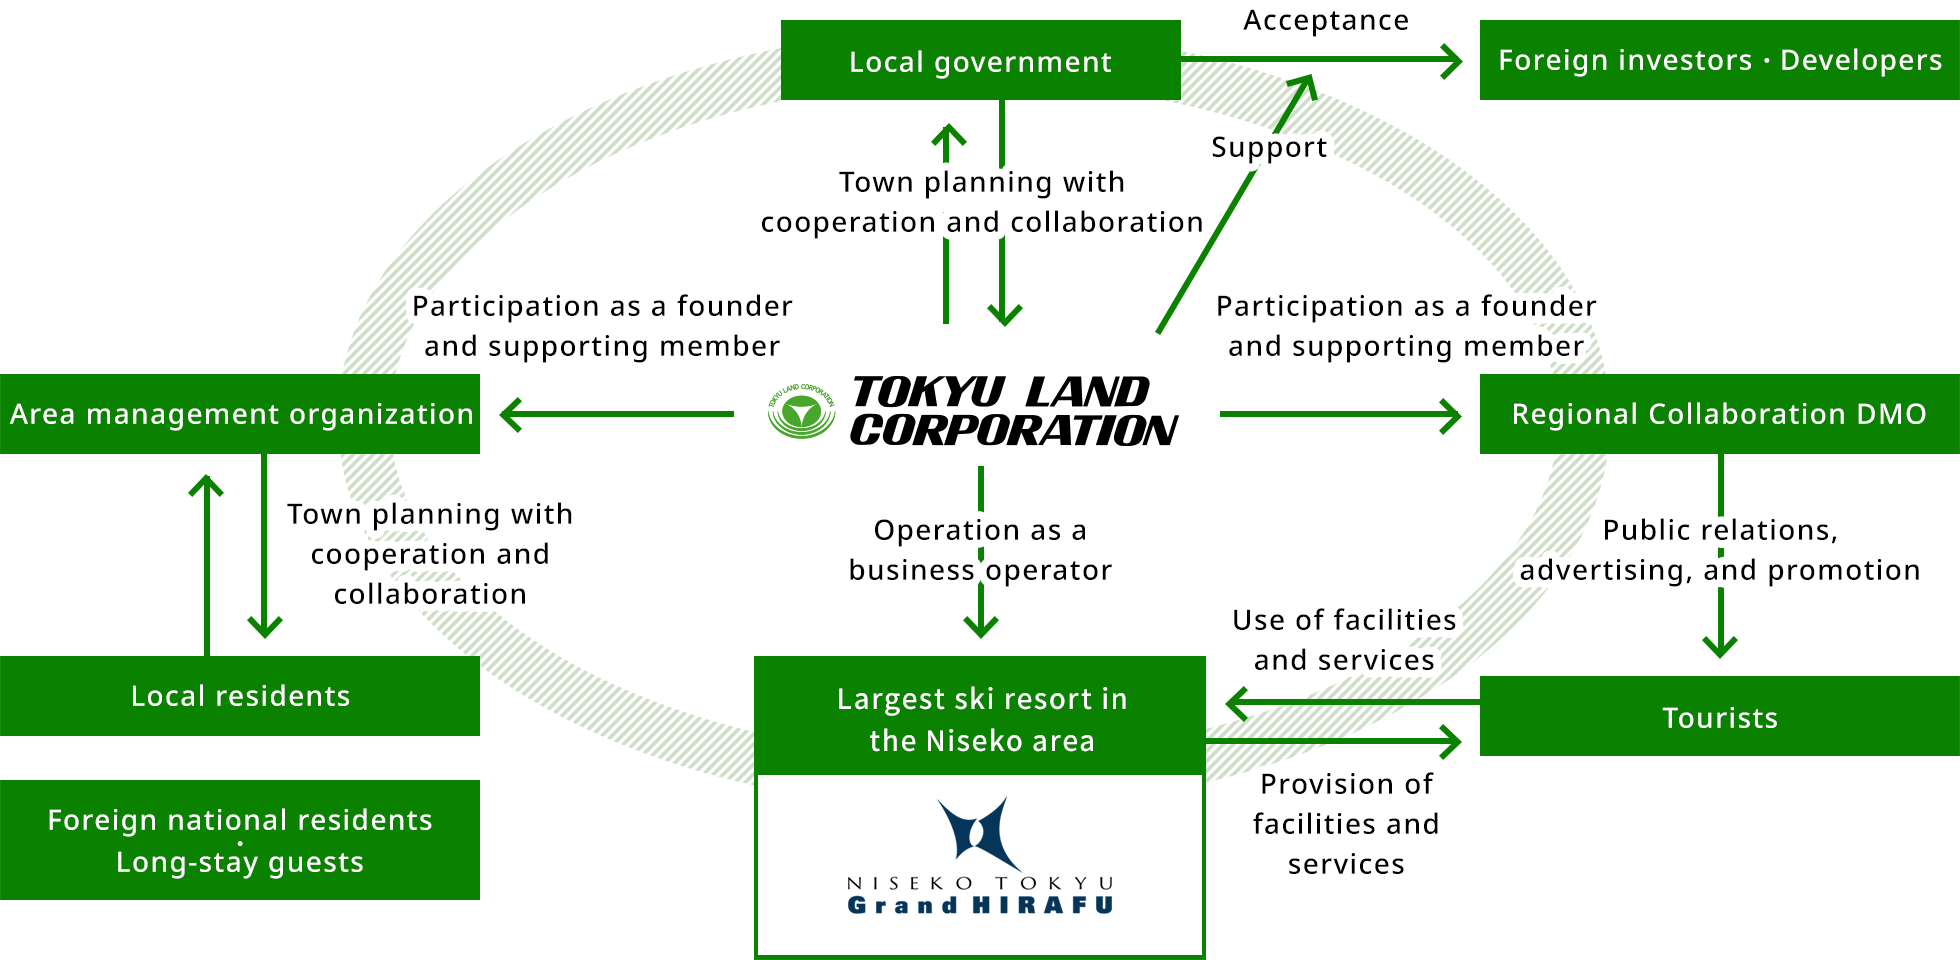 TOKYU LAND CORPORATION's Roles in Niseko